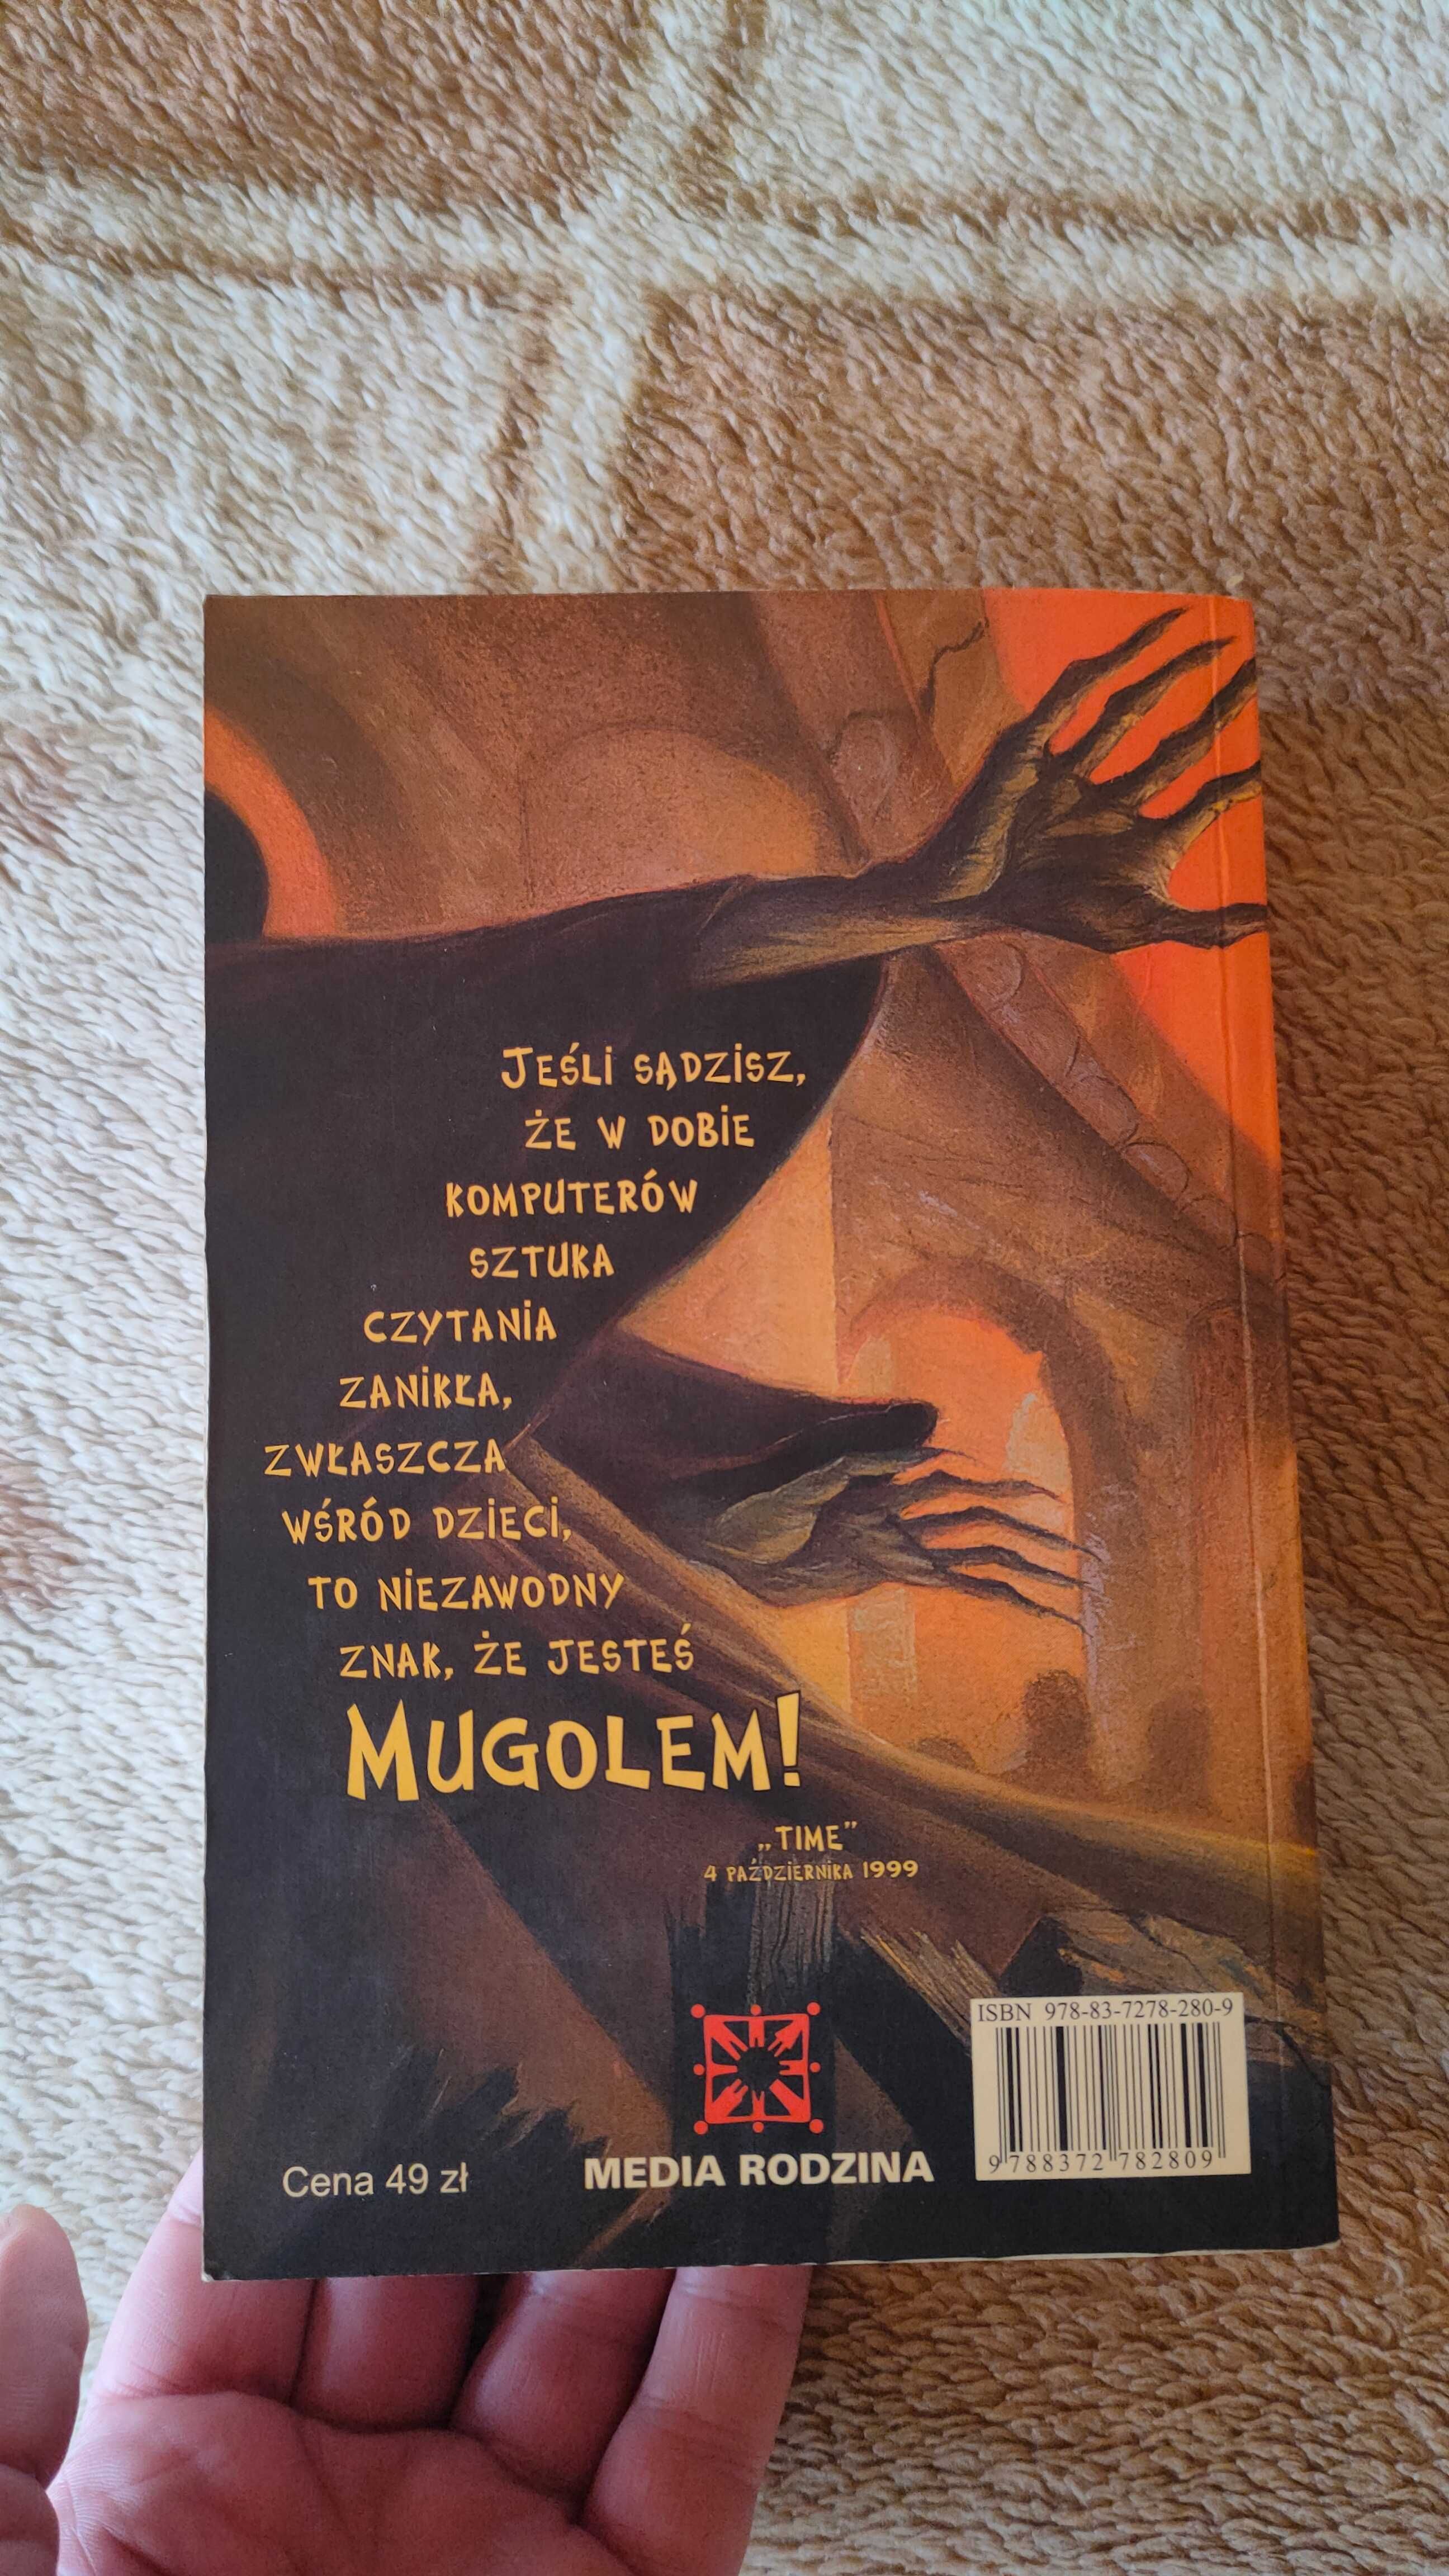 Książka "Harry Potter i Insygnia Śmierci".